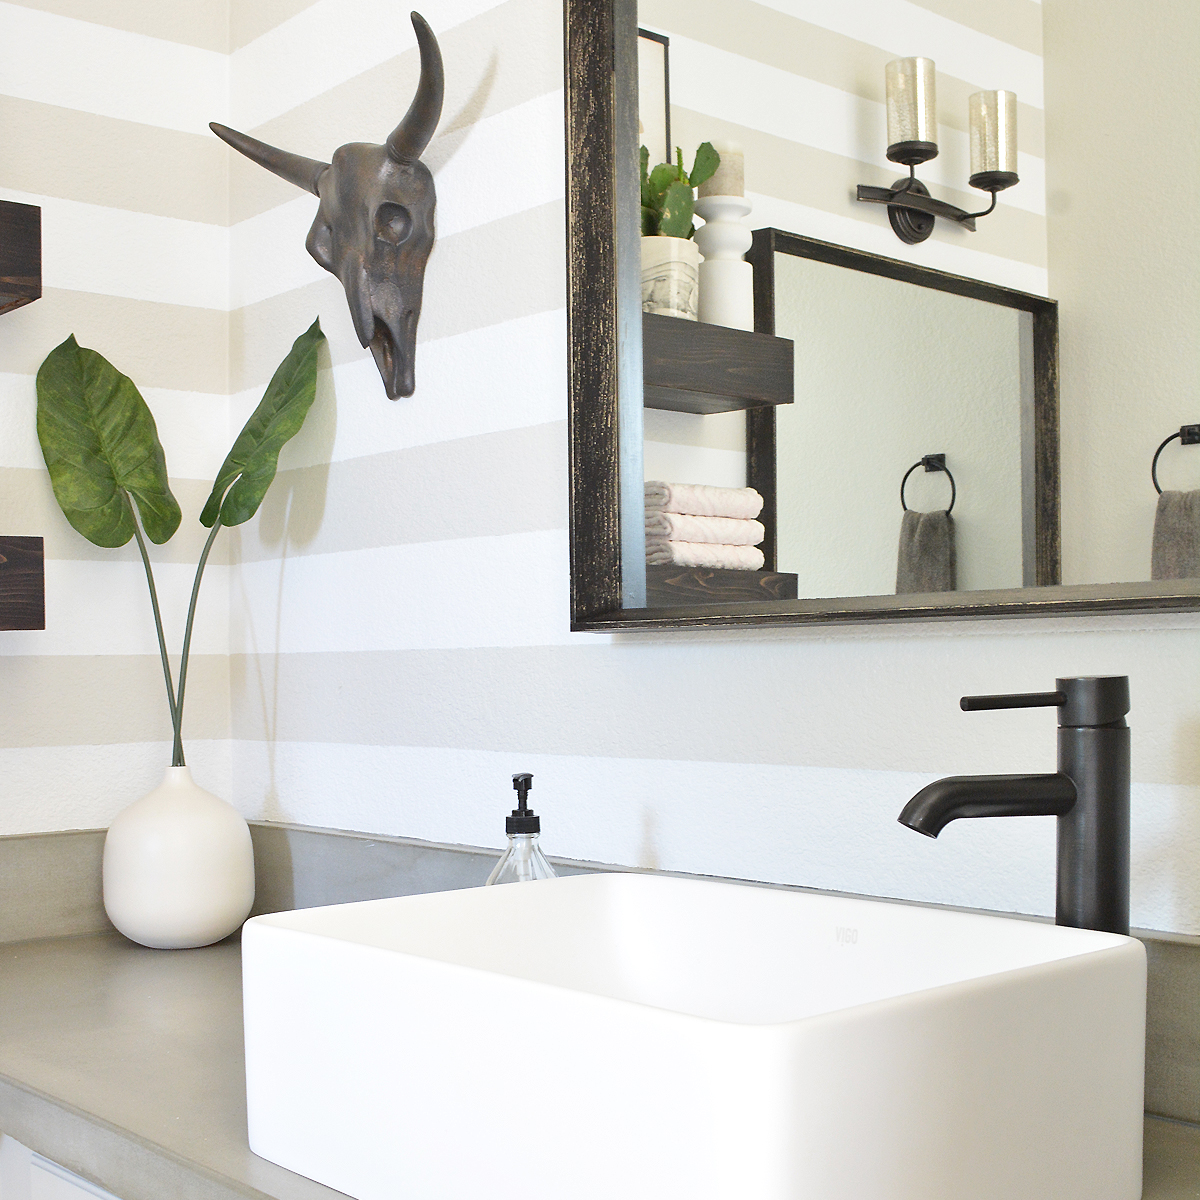 Builder Grade Bathroom Vanity Overhaul